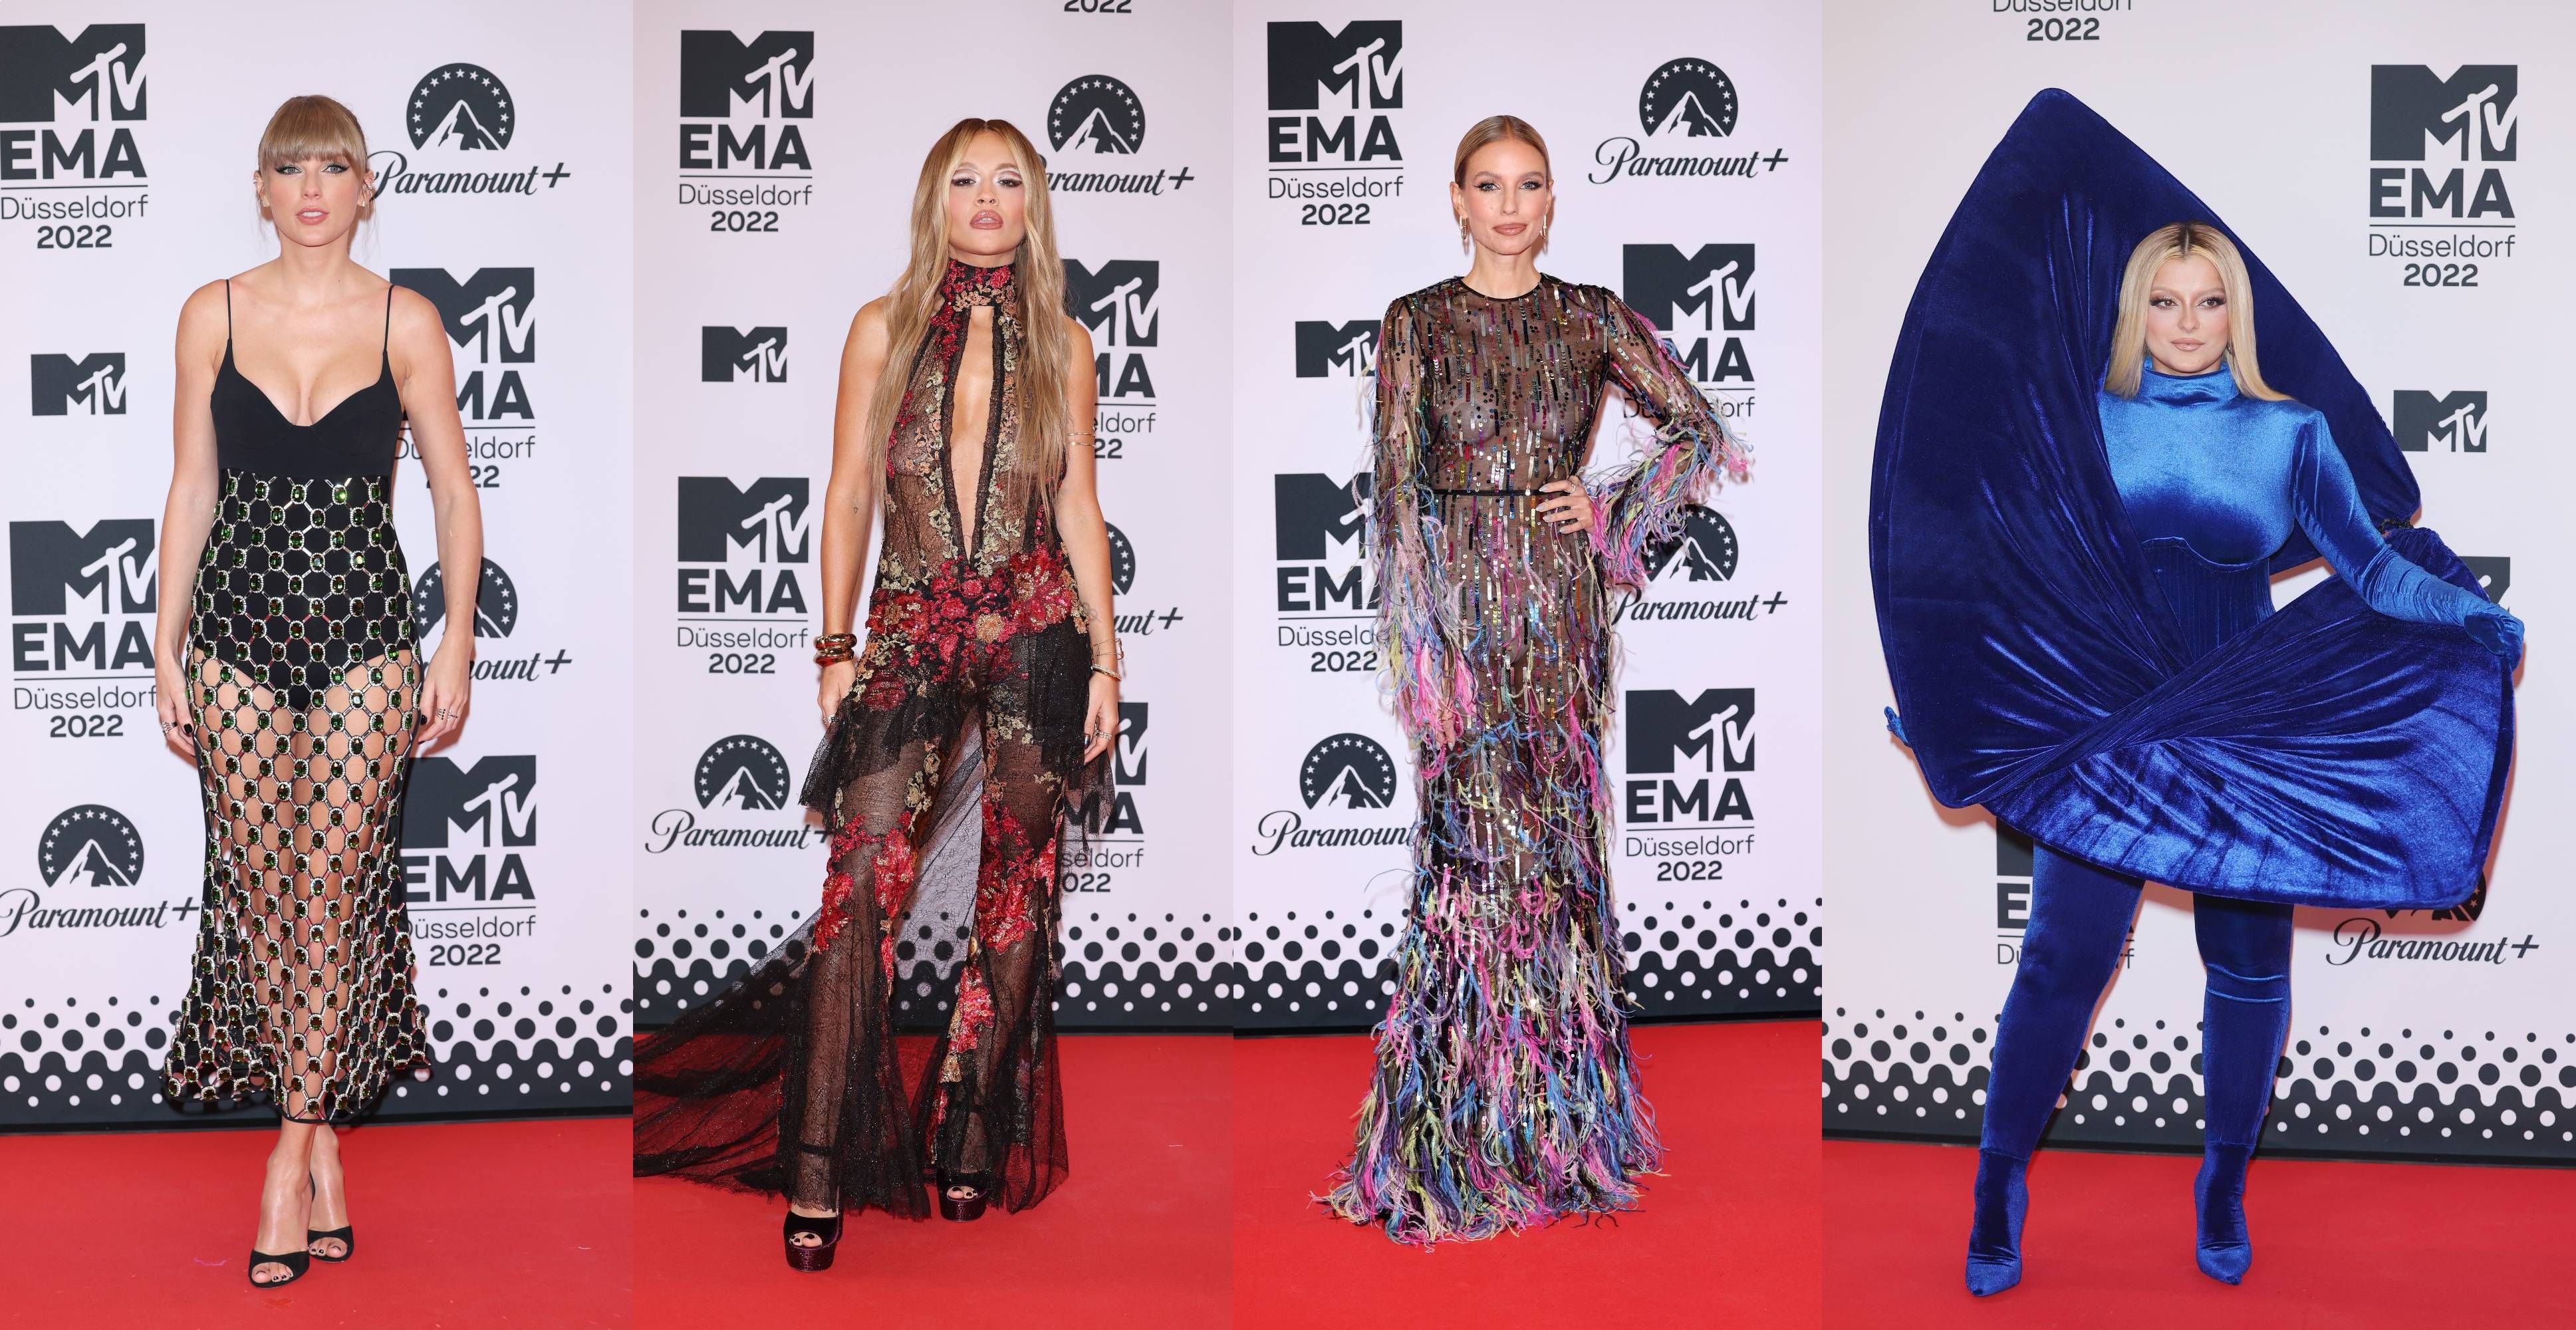 Equivalente vistazo Decano MTV EMAs 2022: los mejores 'looks' de la alfombra roja